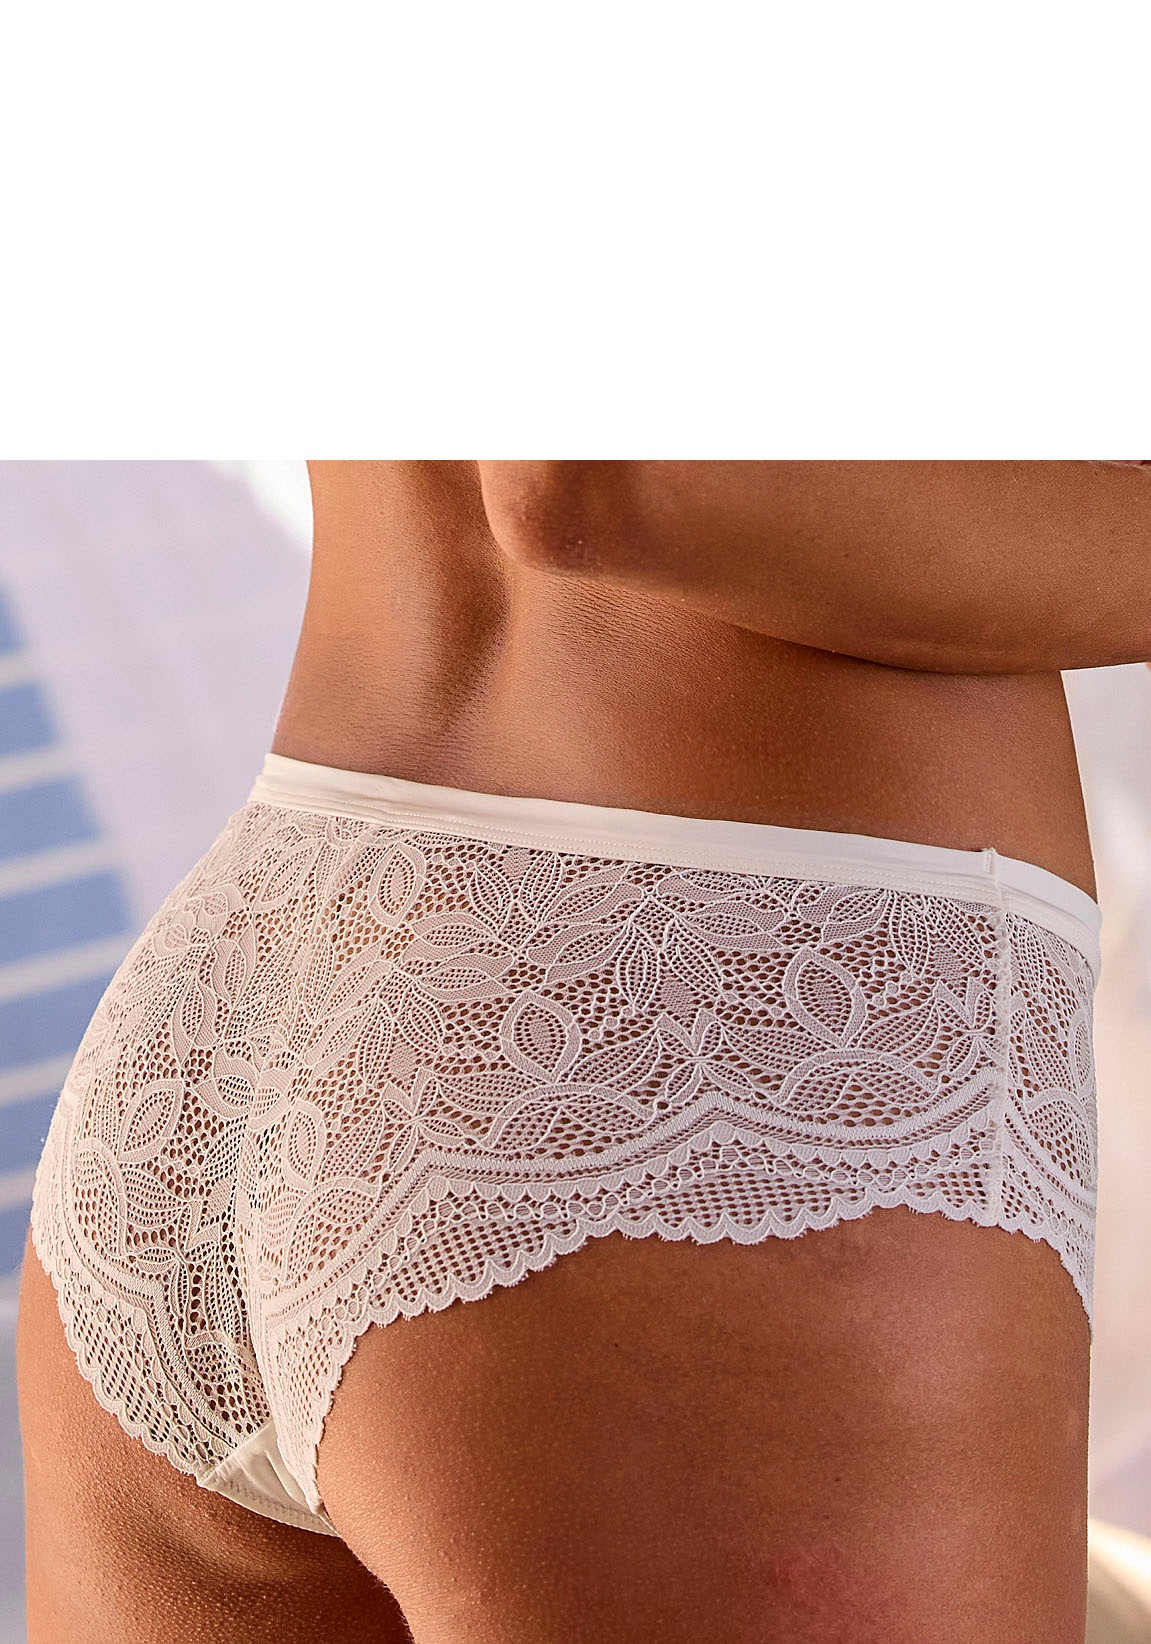 Nuance Panty, rundherum aus Spitze Unterwäsche | LASCANA Bademode, Lingerie online transparenter kaufen » 